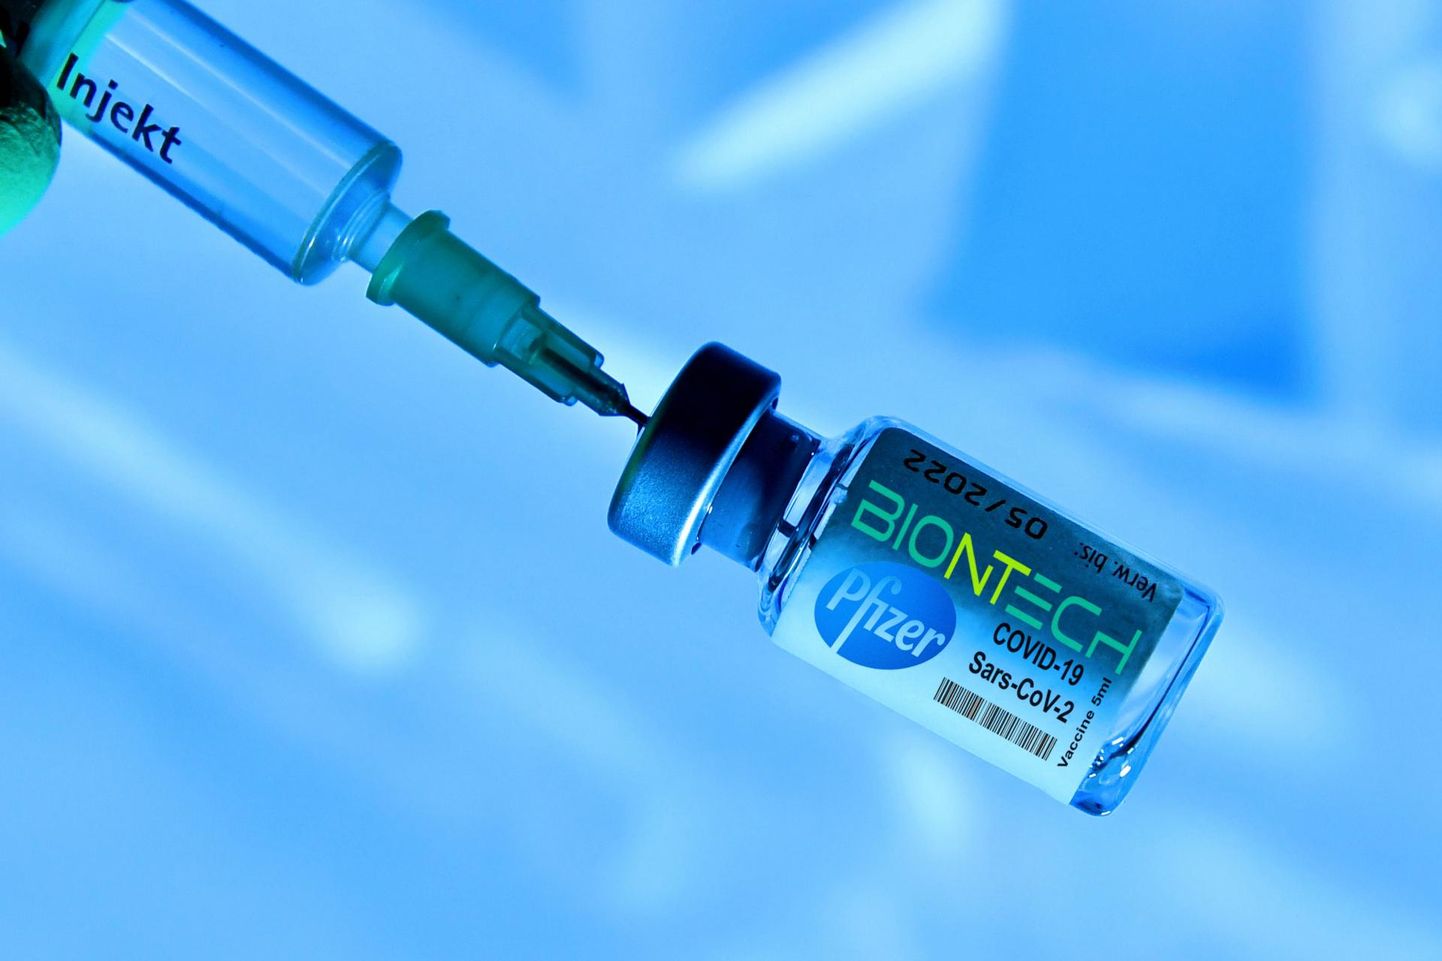 Pfizeri-suguse suurema firmaga jõud ühendades on BioNTech suutnud toota palju rohkem vaktsiinidoose kui Moderna, mis toetub allhankijatele.